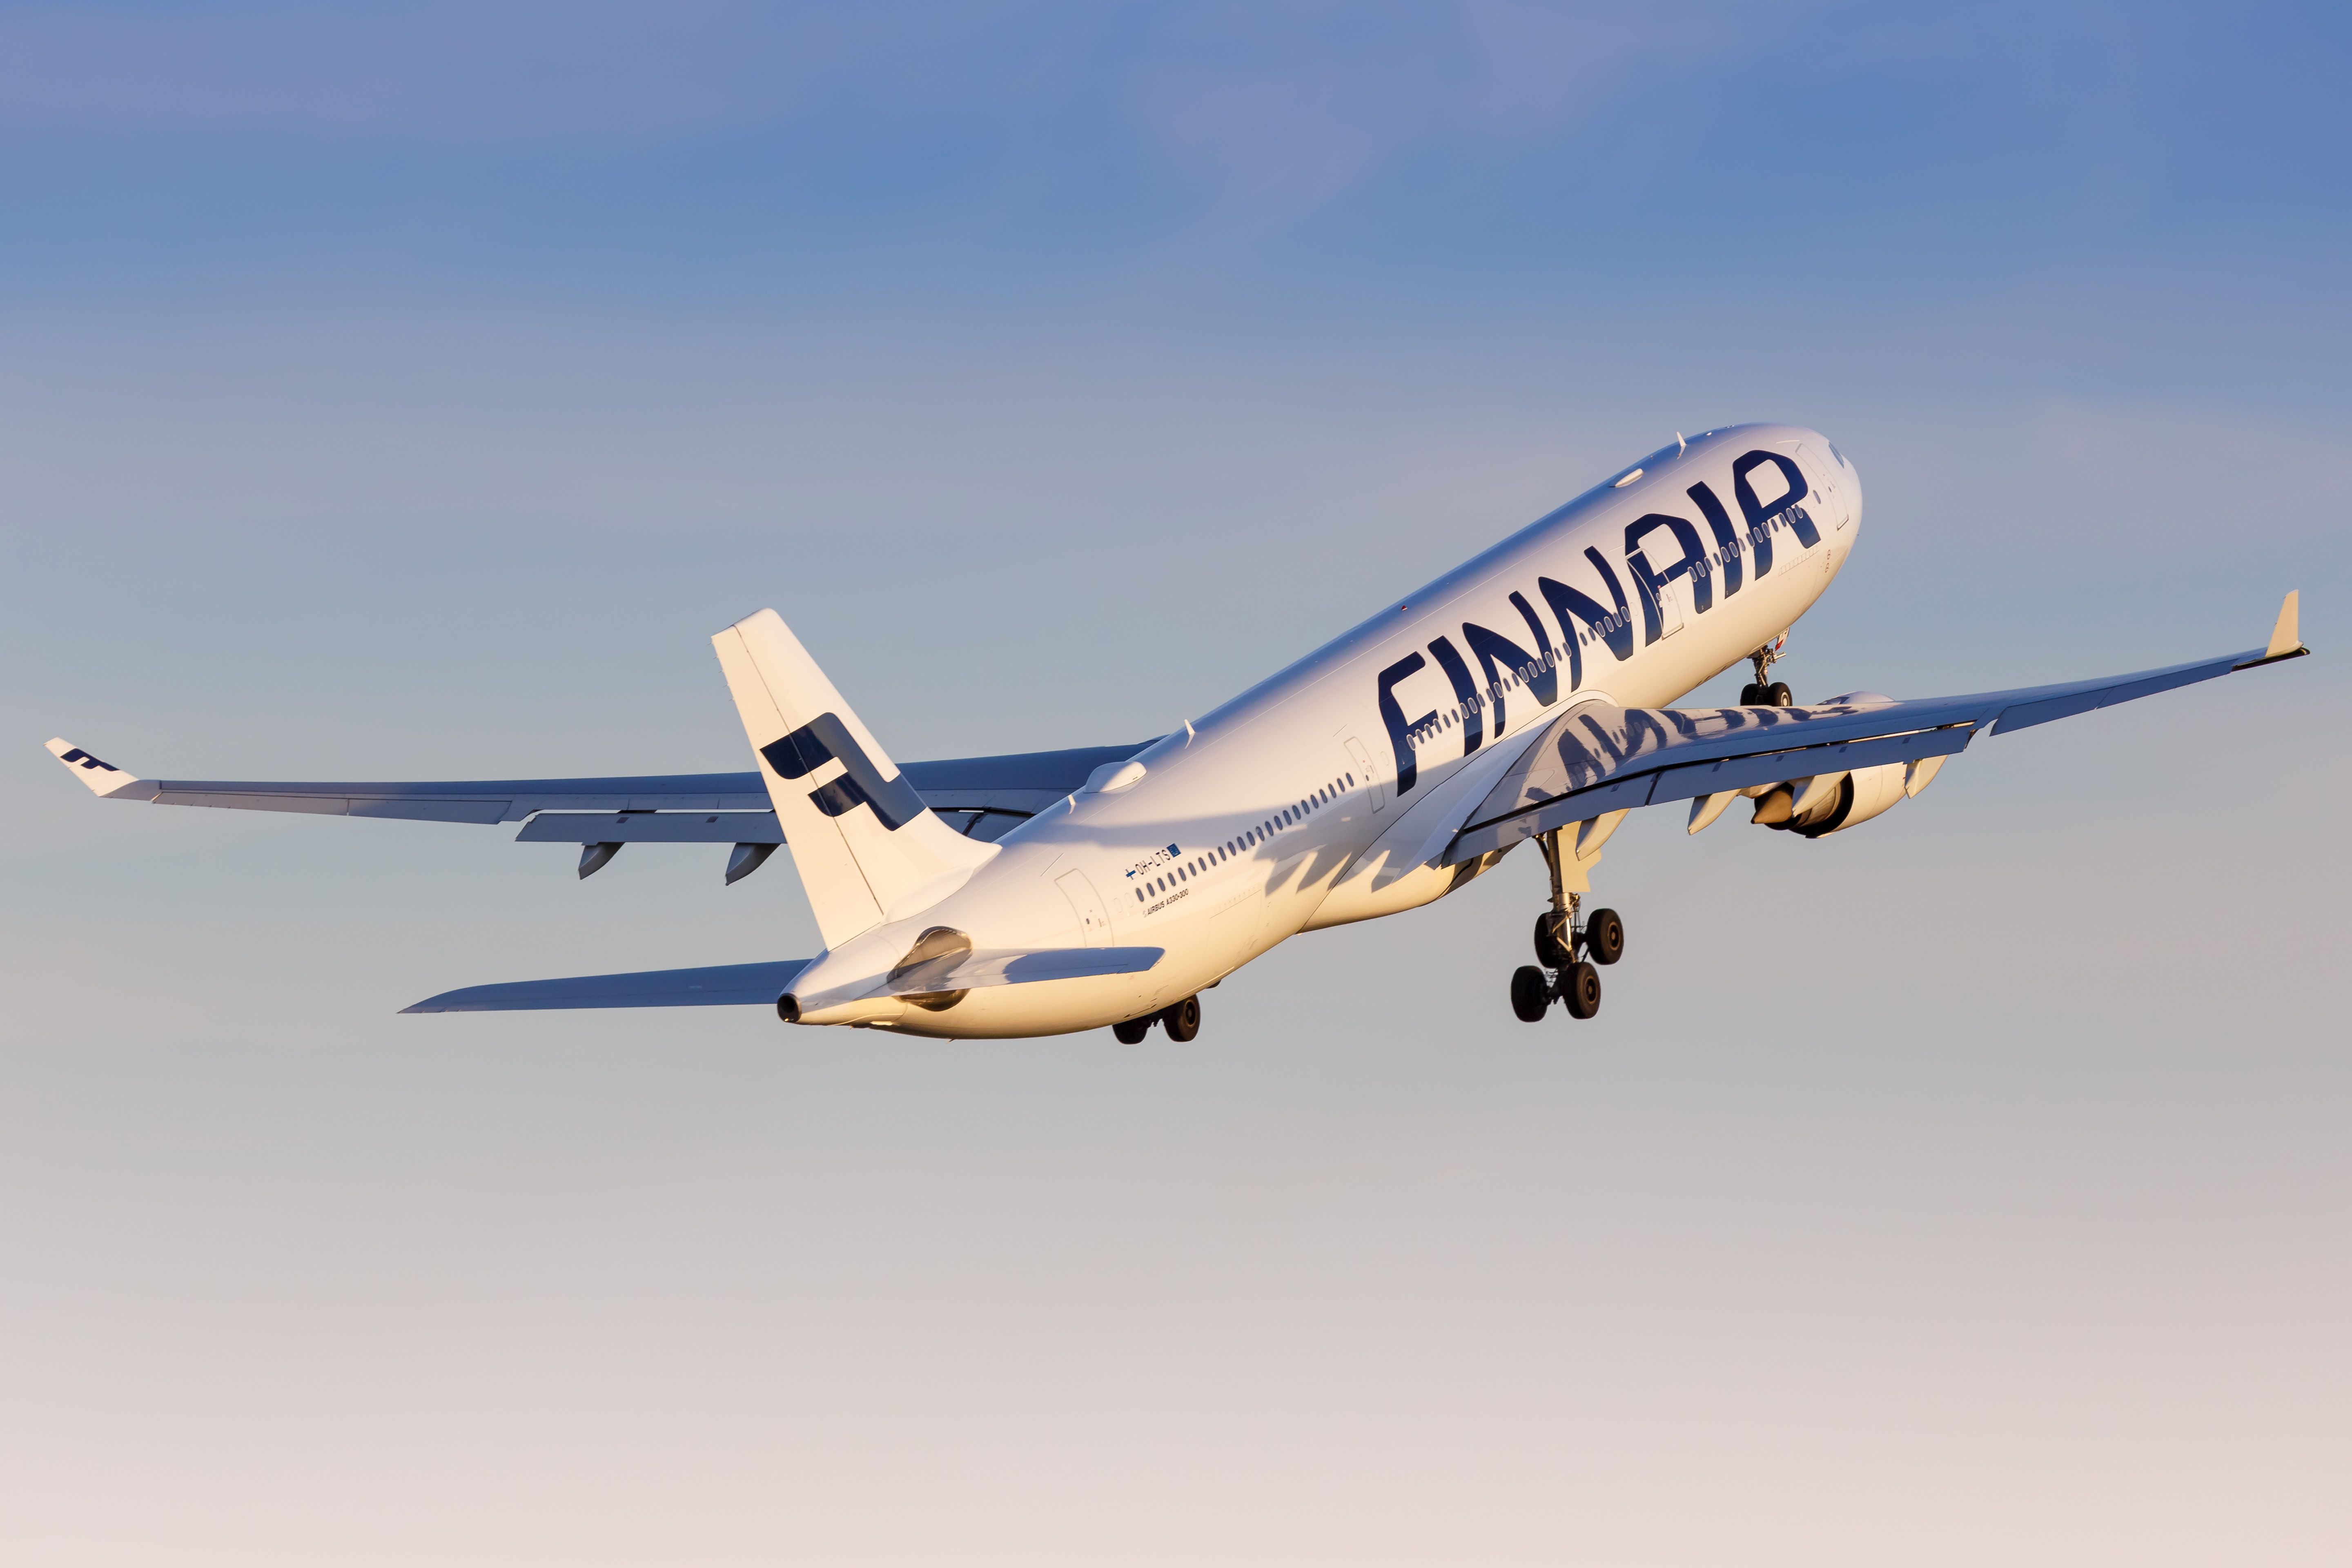 Finnair Airbus A330 taking off